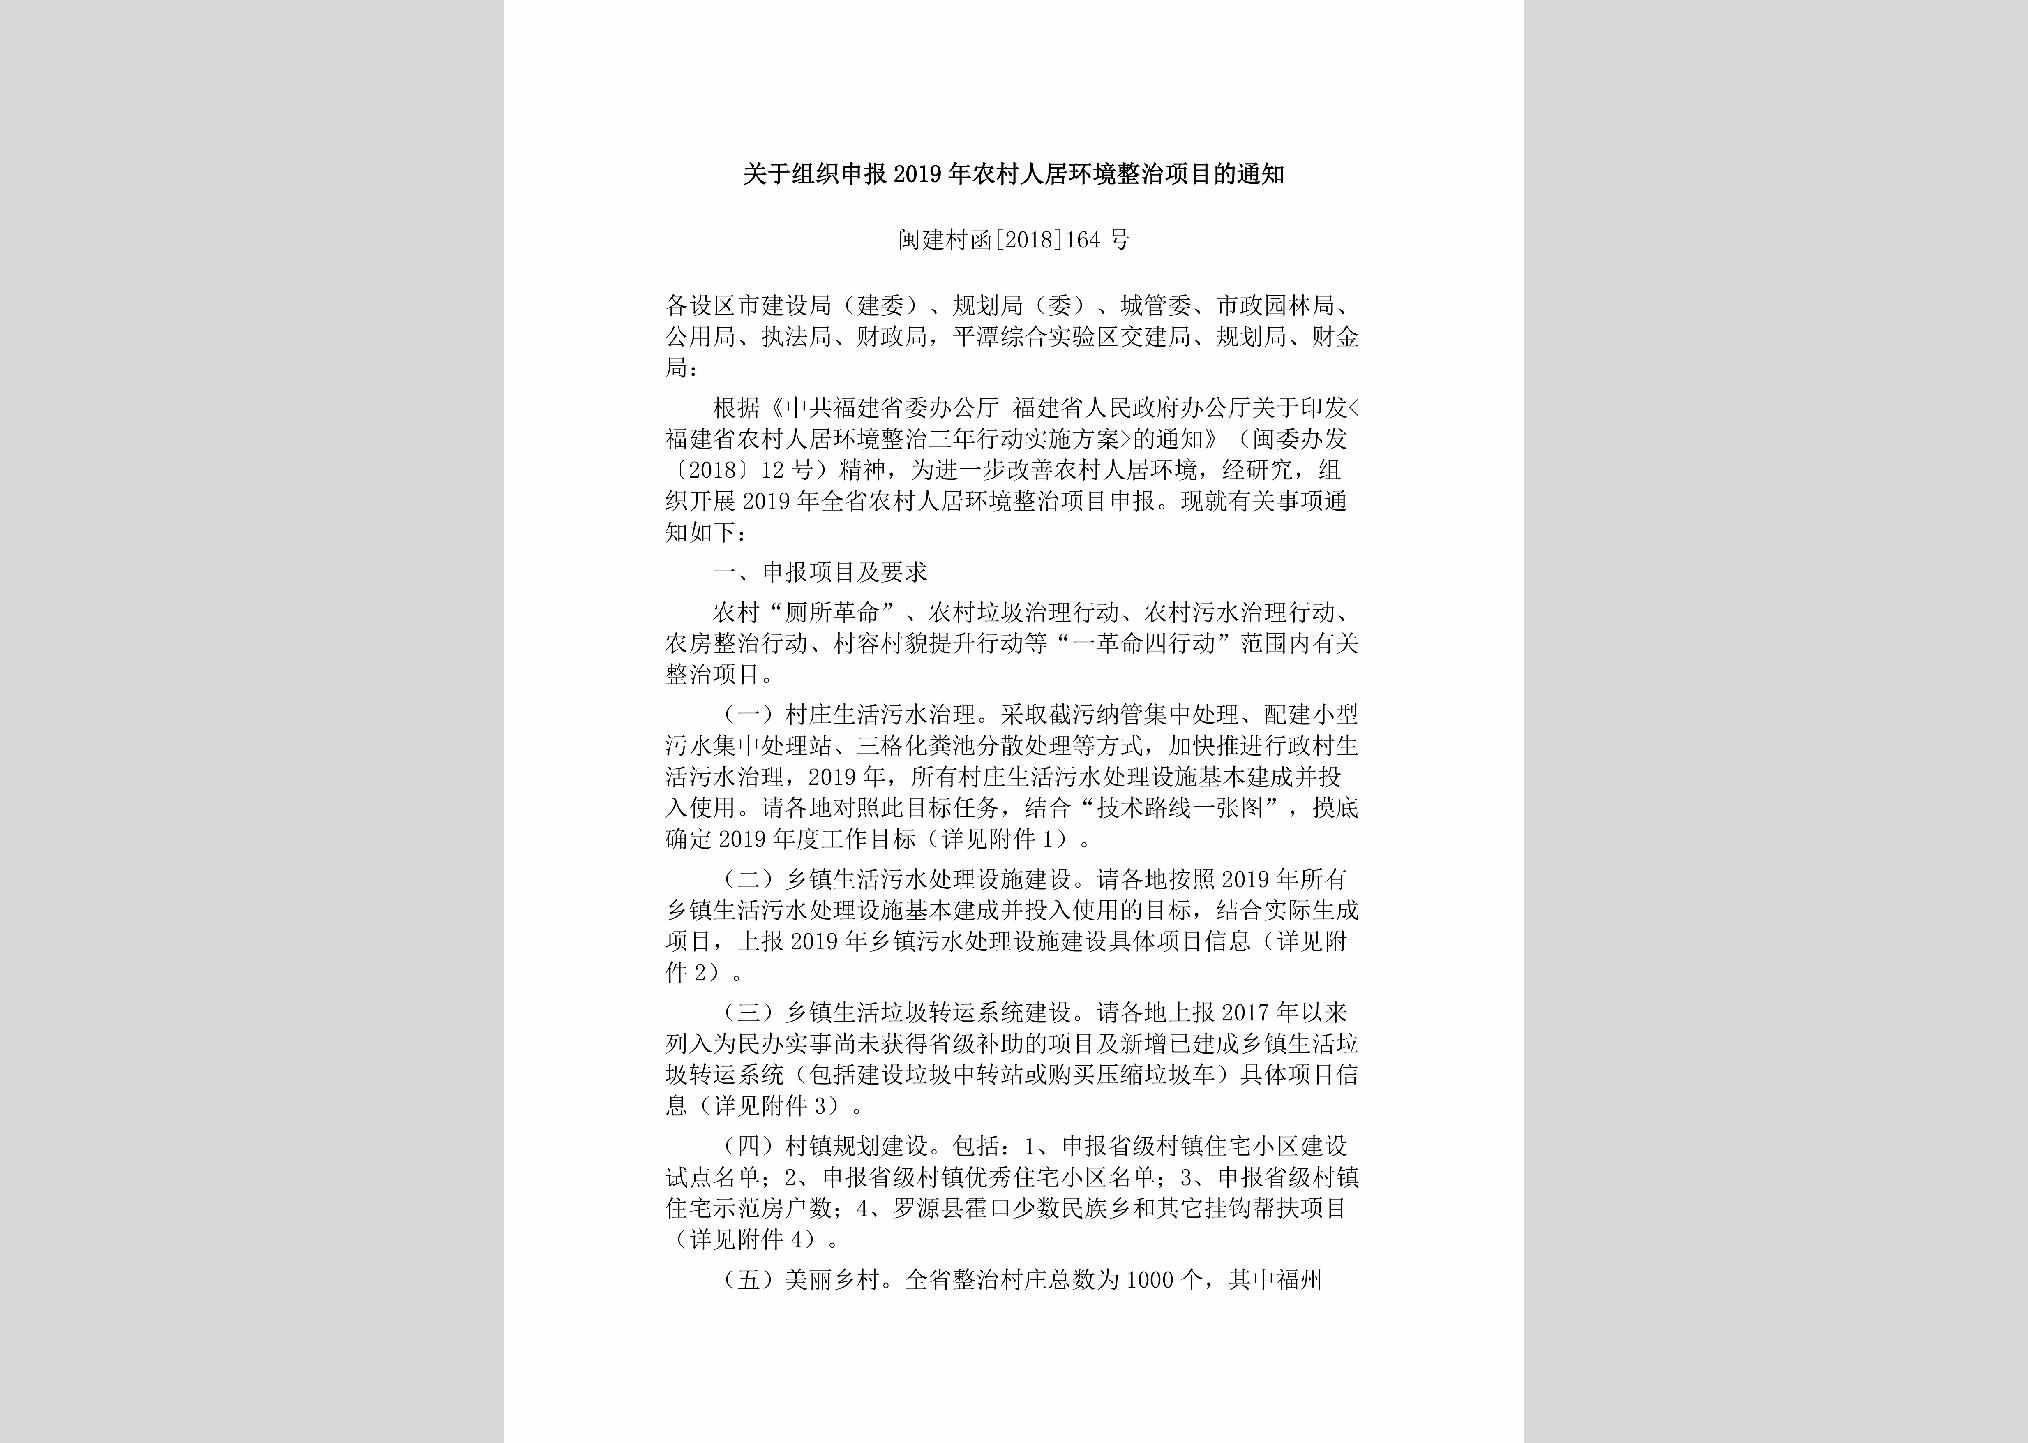 闽建村函[2018]164号：关于组织申报2019年农村人居环境整治项目的通知